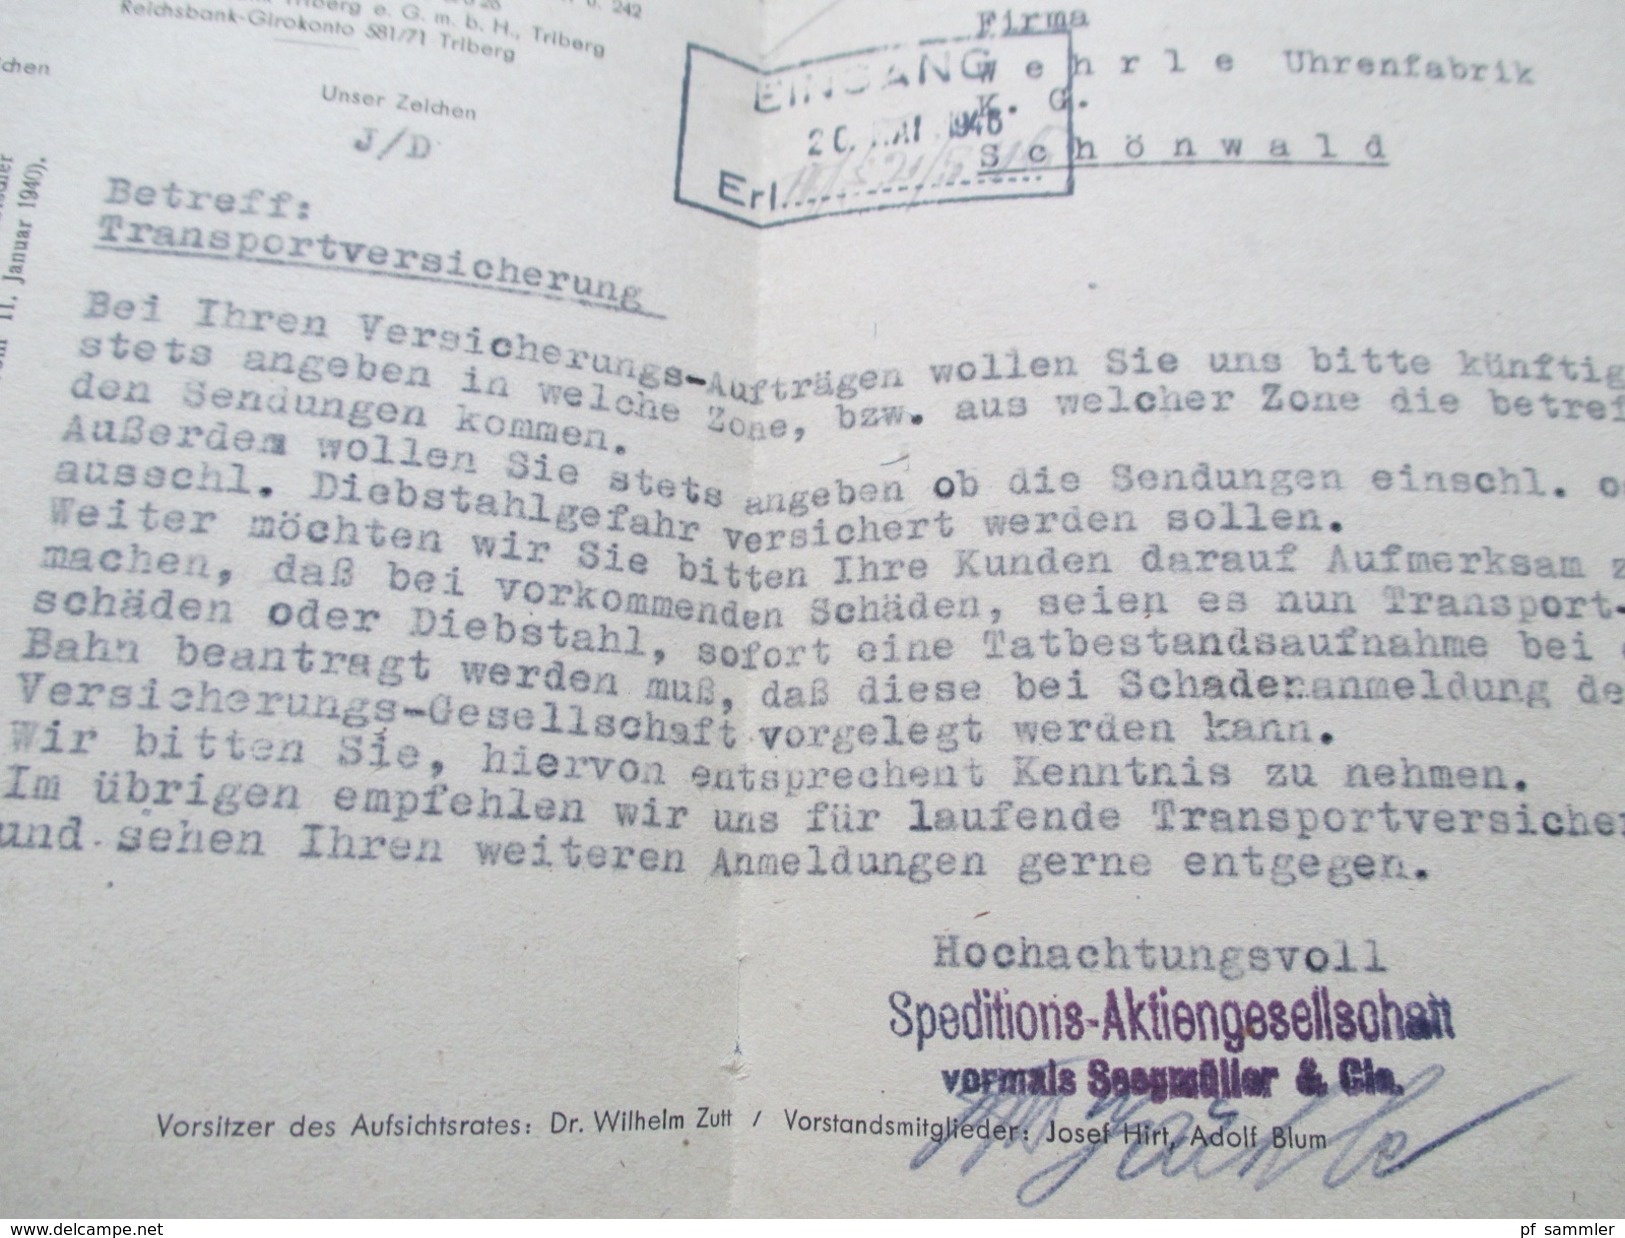 Alliierte Besetzung 1946 R1 Gebühr bezahlt (lila) Triberg (Schwarzwald) Porto handschriftlich vermerkt! Transportversich